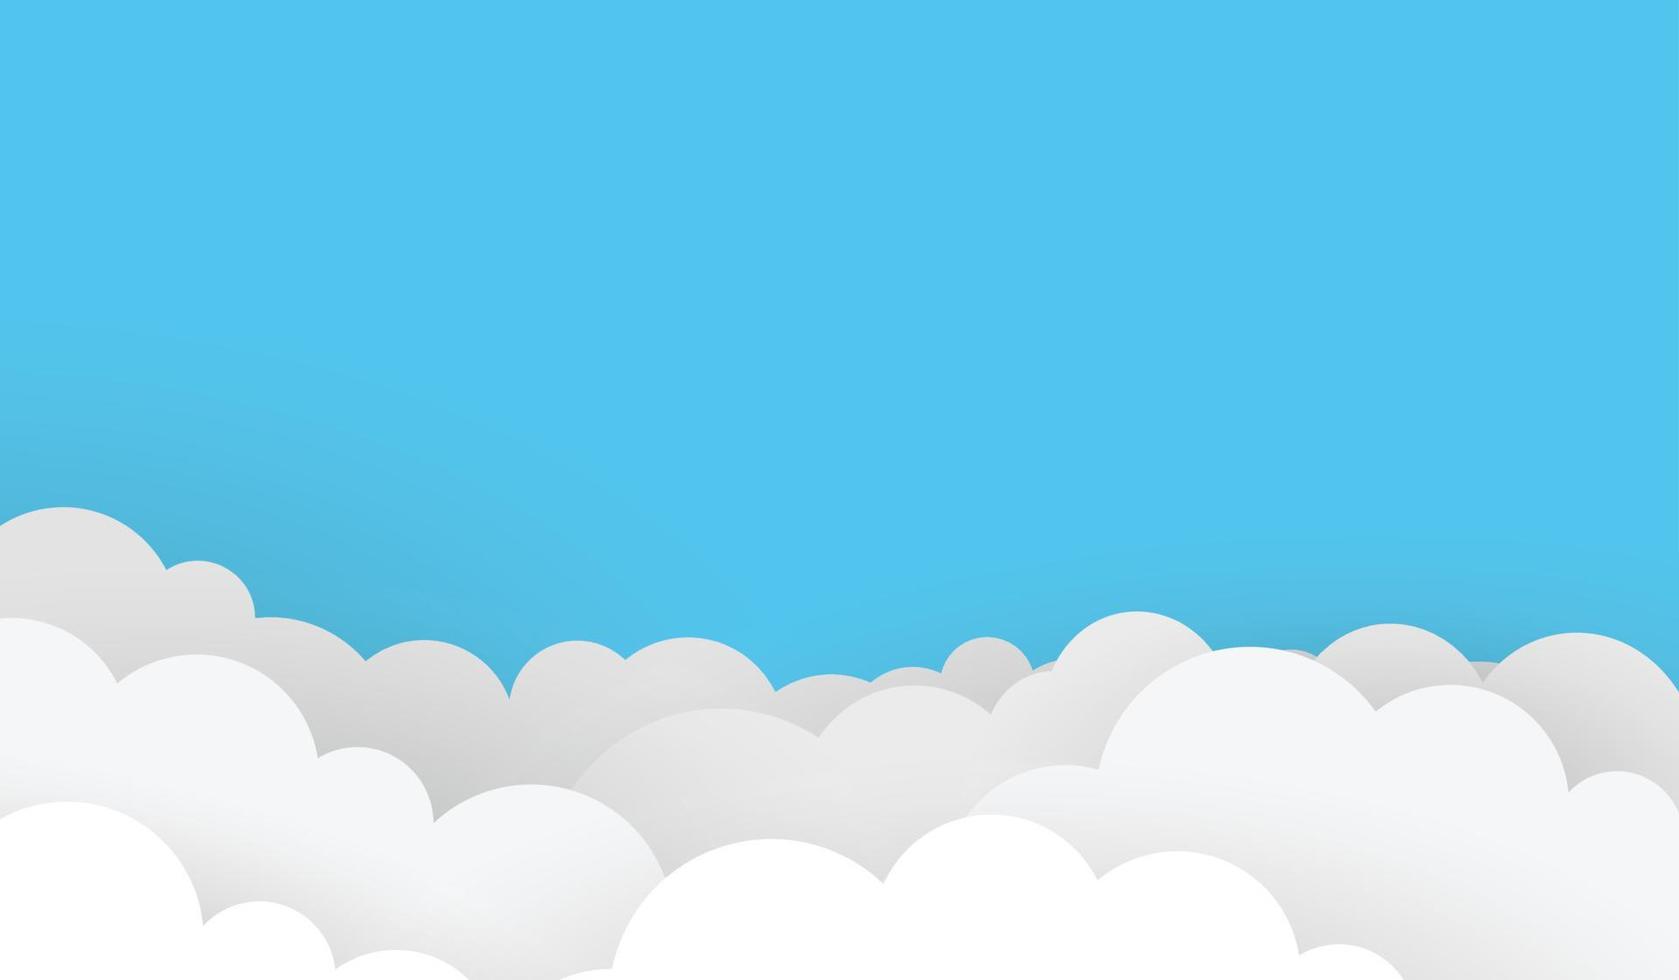 stile taglio carta blu. nuvole di sfondo aziendale vettore